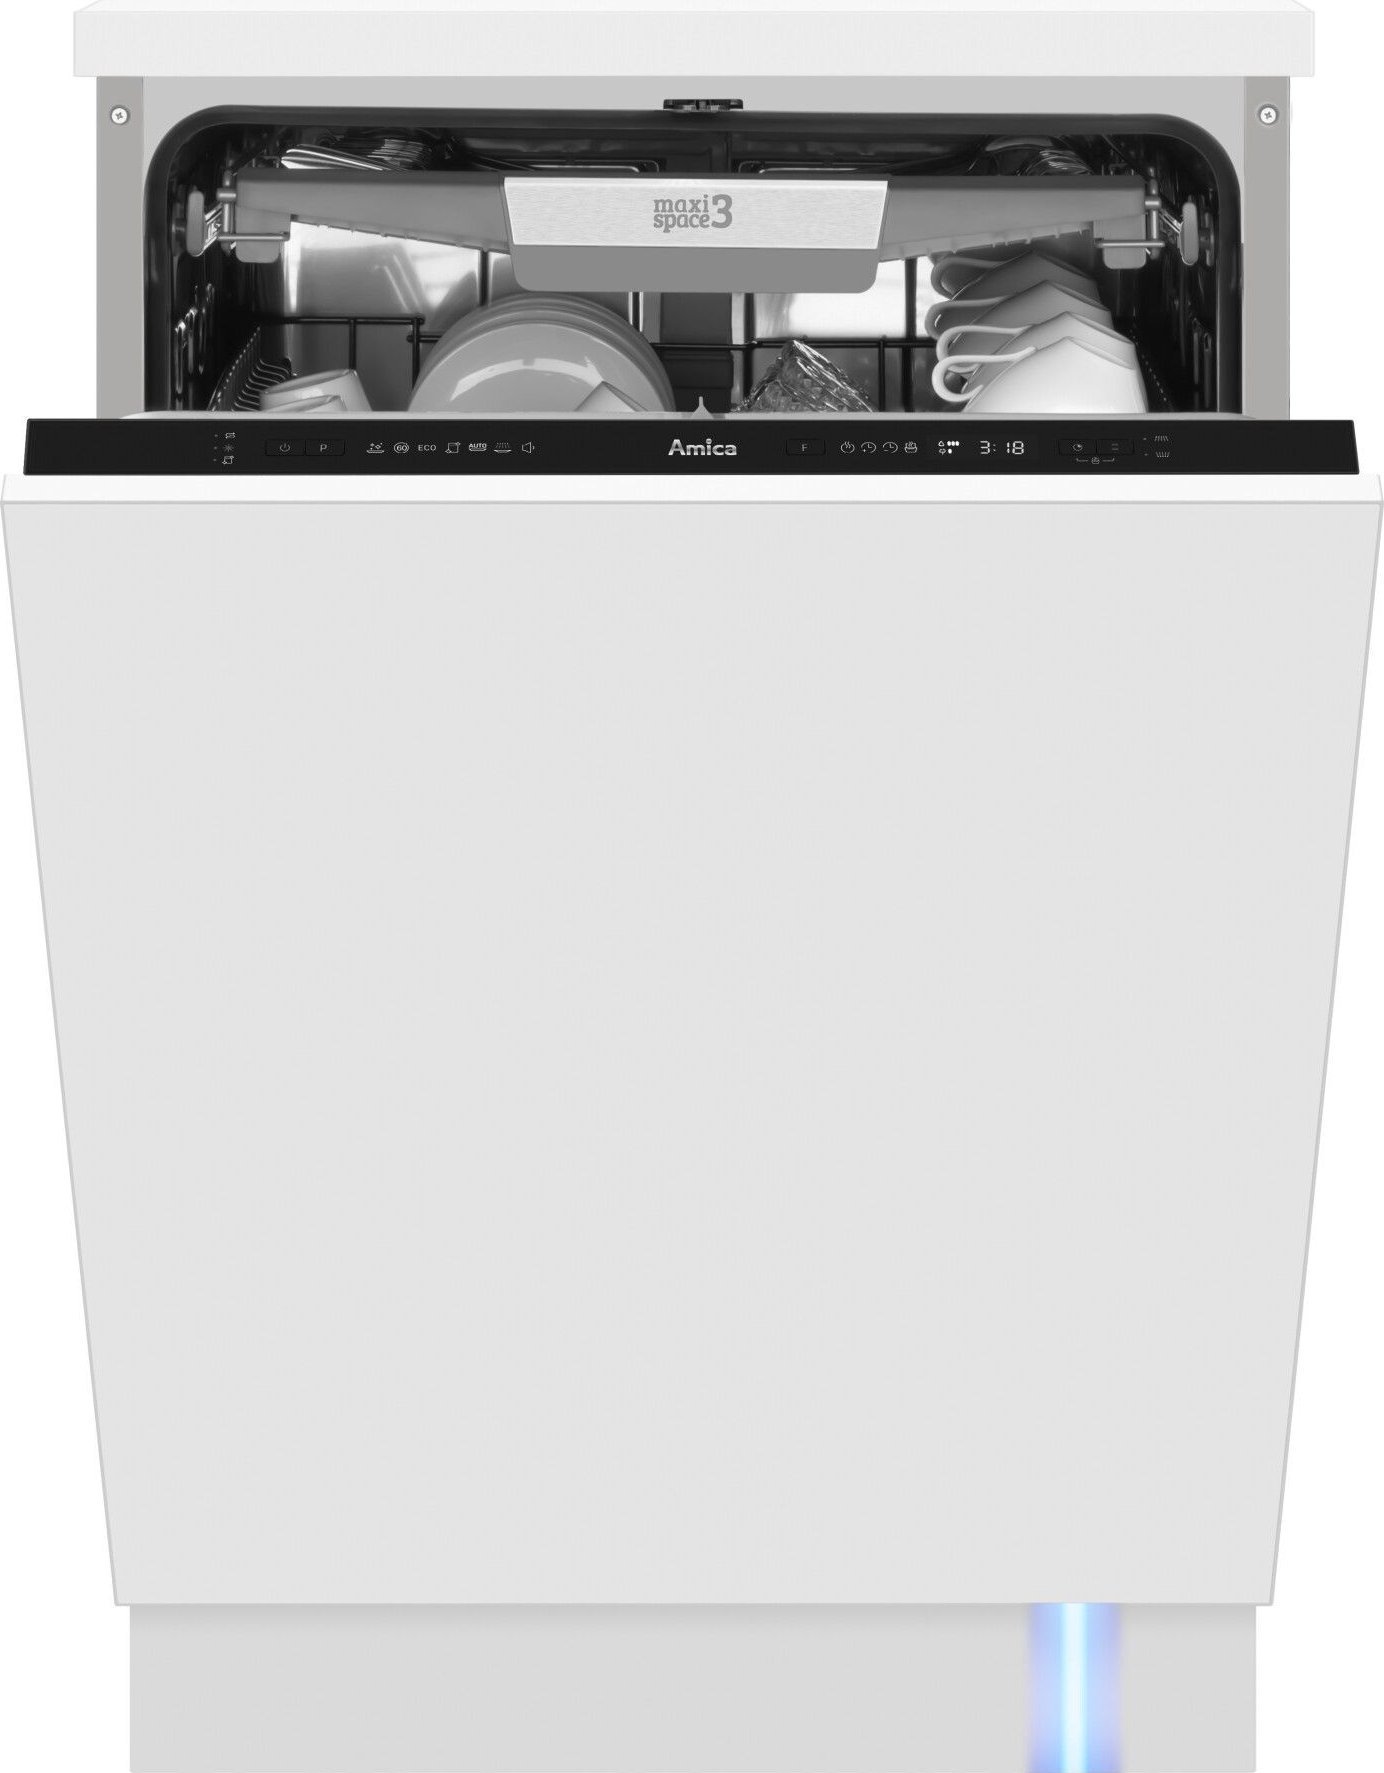 Masini de spalat vase incorporabile - Mașină de spălat vase Amica DIM64C7EBOQH,
14 seturi,44 dB
